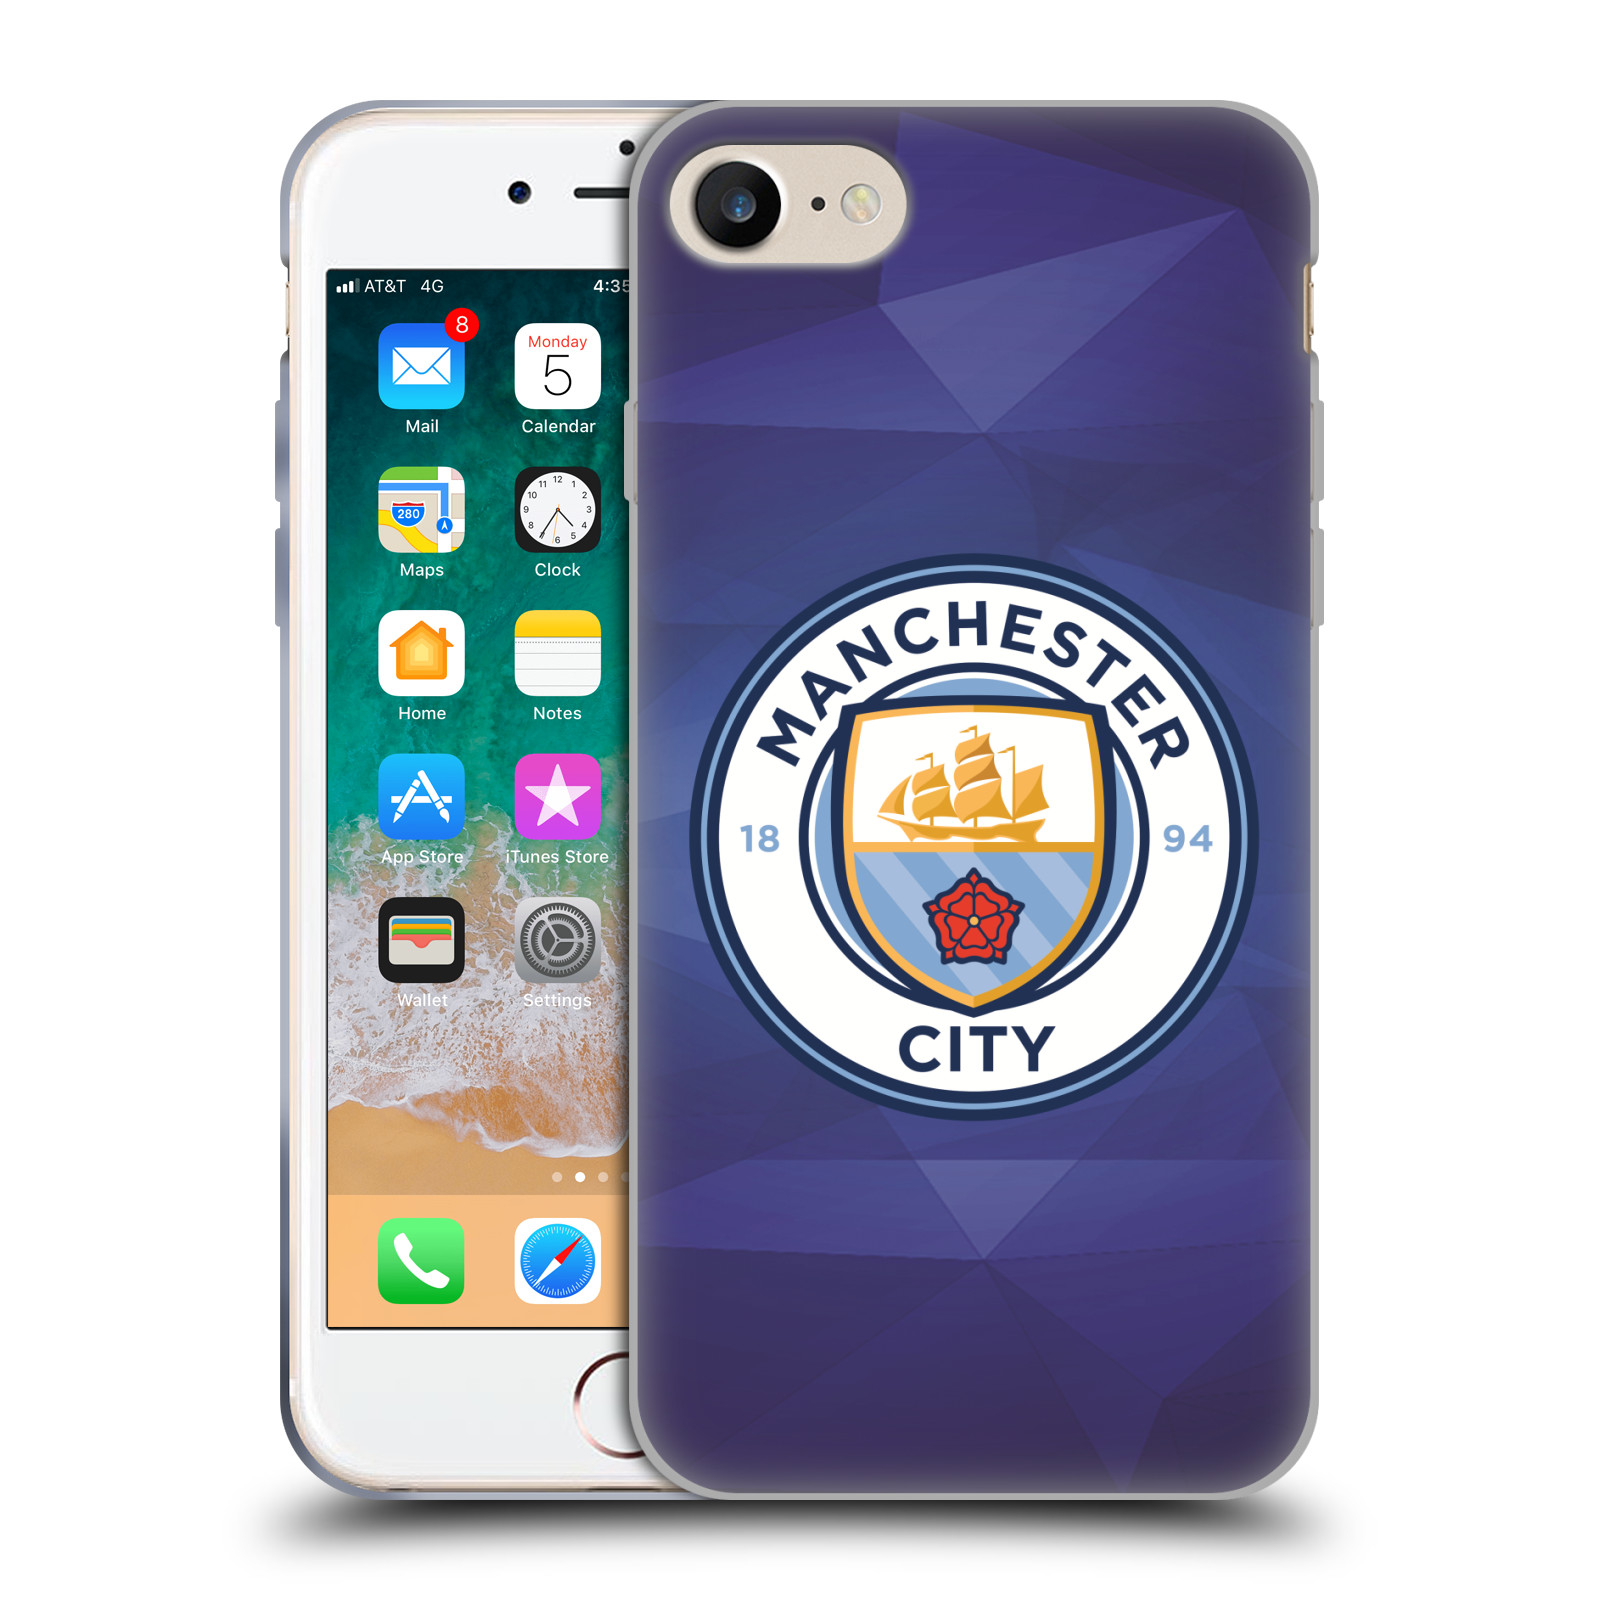 Silikonové pouzdro na mobil Apple iPhone 7 HEAD CASE Manchester City FC - Modré nové logo (Silikonový kryt či obal na mobilní telefon licencovaným motivem Manchester City FC pro Apple iPhone 7)